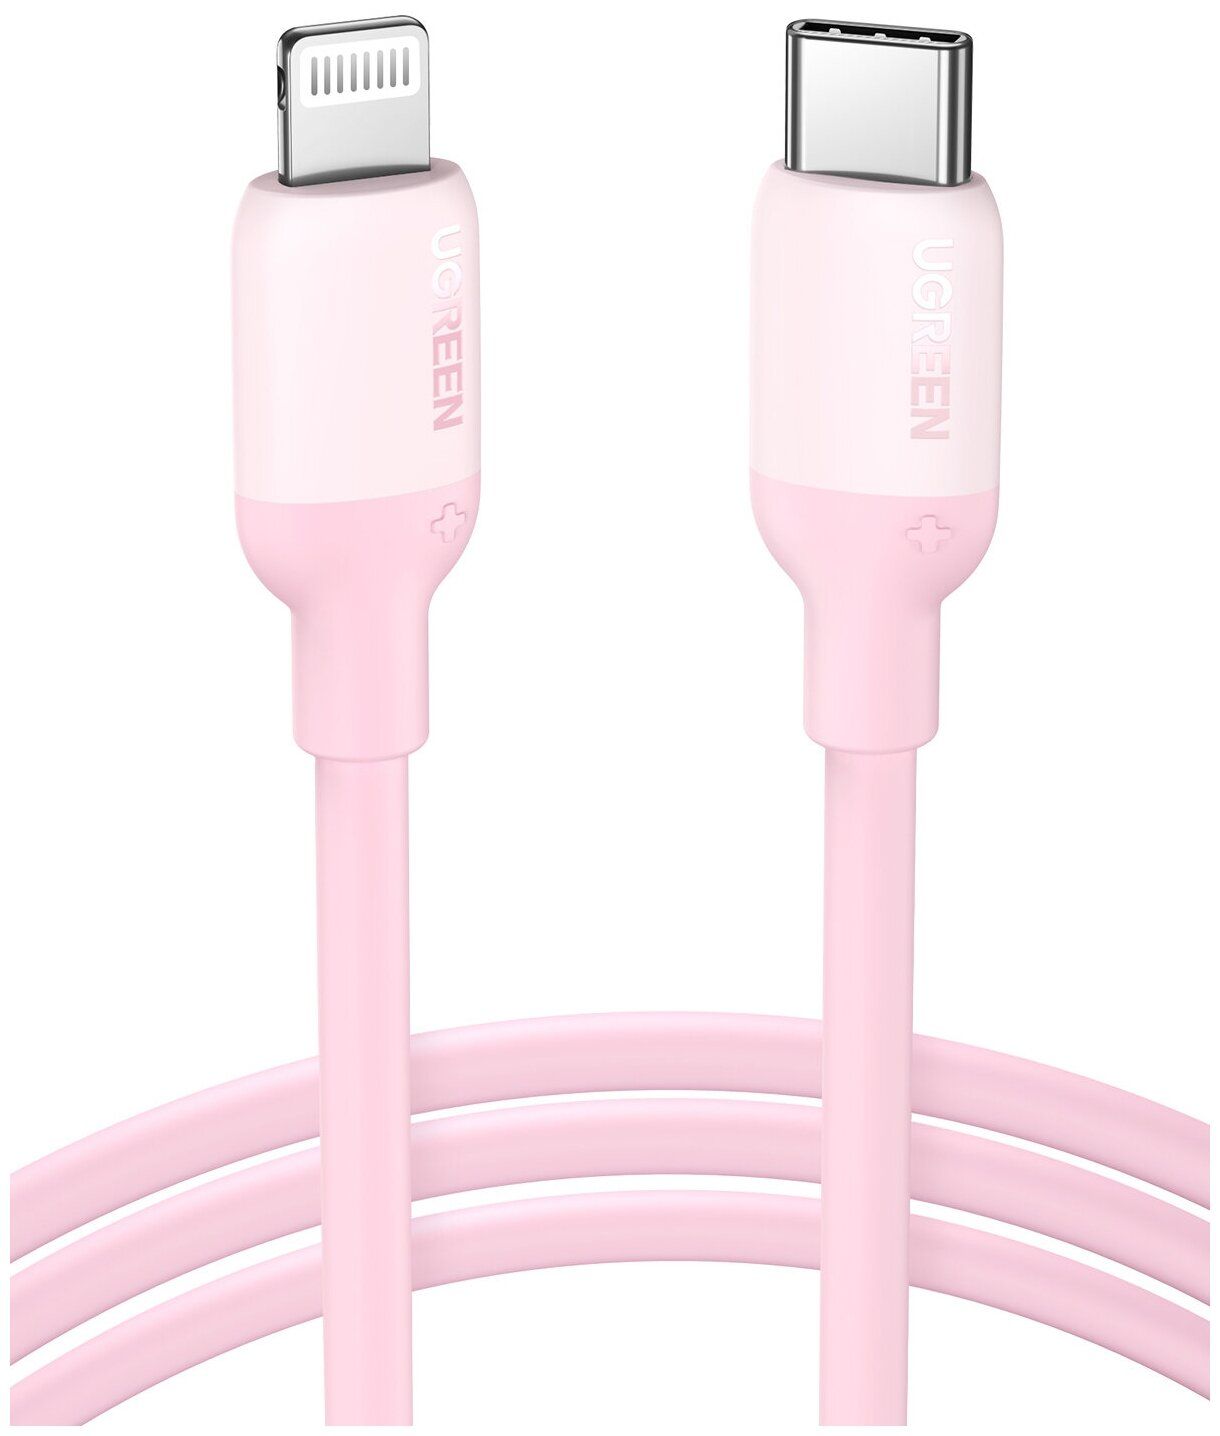 Кабель UGREEN US387 (60625) USB-C to Lightning Silicone Cable. 1 м. розовый кабель зарядный rogue для ios usb кабель type c для телефона кабель зарядного устройства для iphone xiaomi кабель для передачи данных 1 2 м